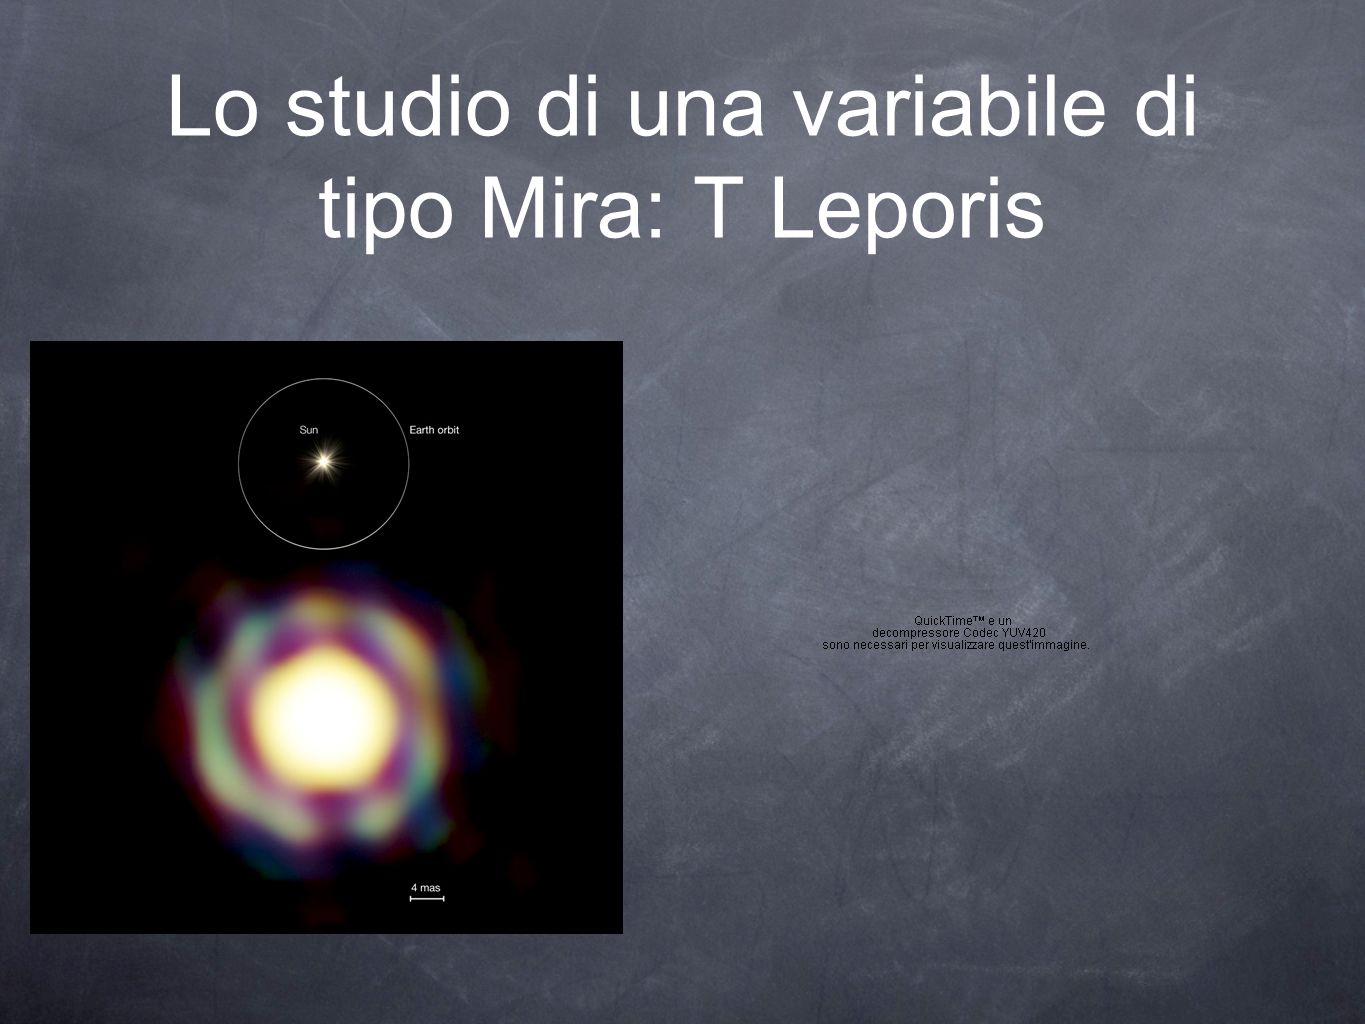 Lo studio di una variabile di tipo Mira: T Leporis